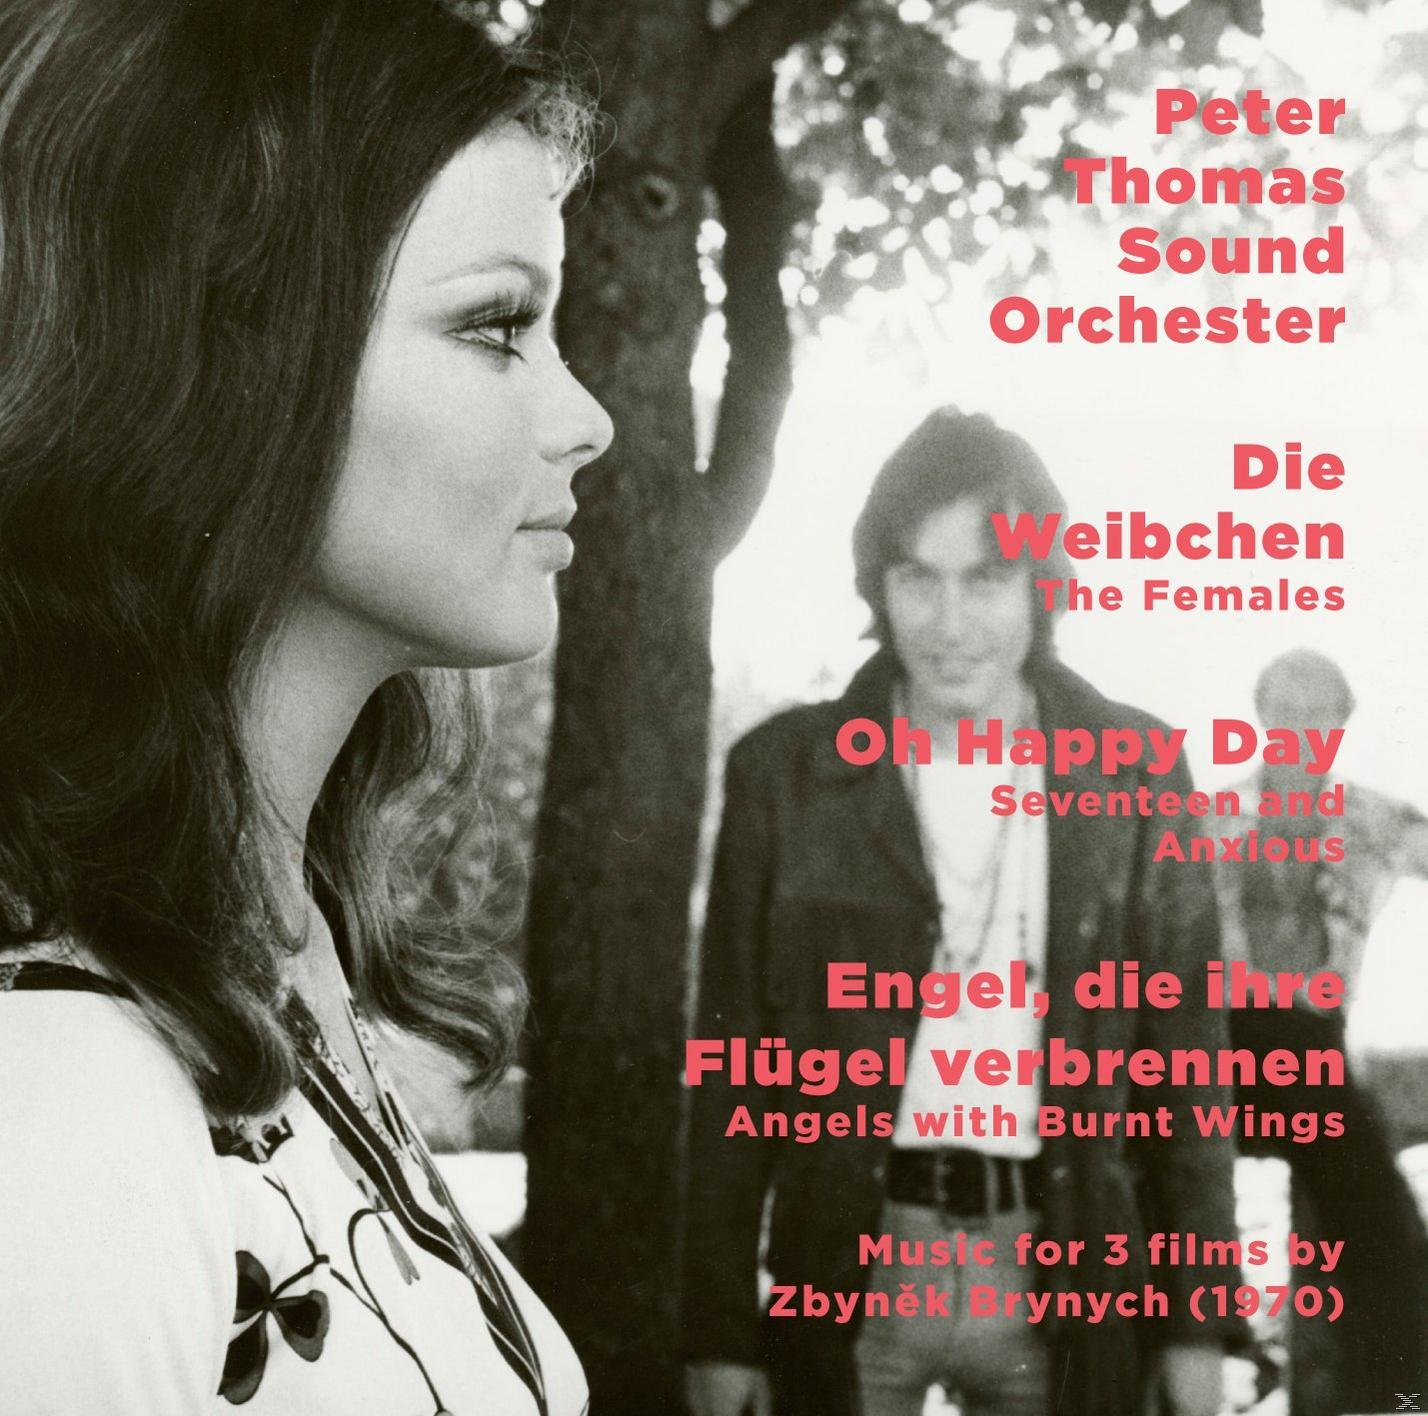 Peter Thomas Sound Orchester Happy (CD) - Verbrennen Die Ihre Flügel Day/Engel, Weibchen/O - Die